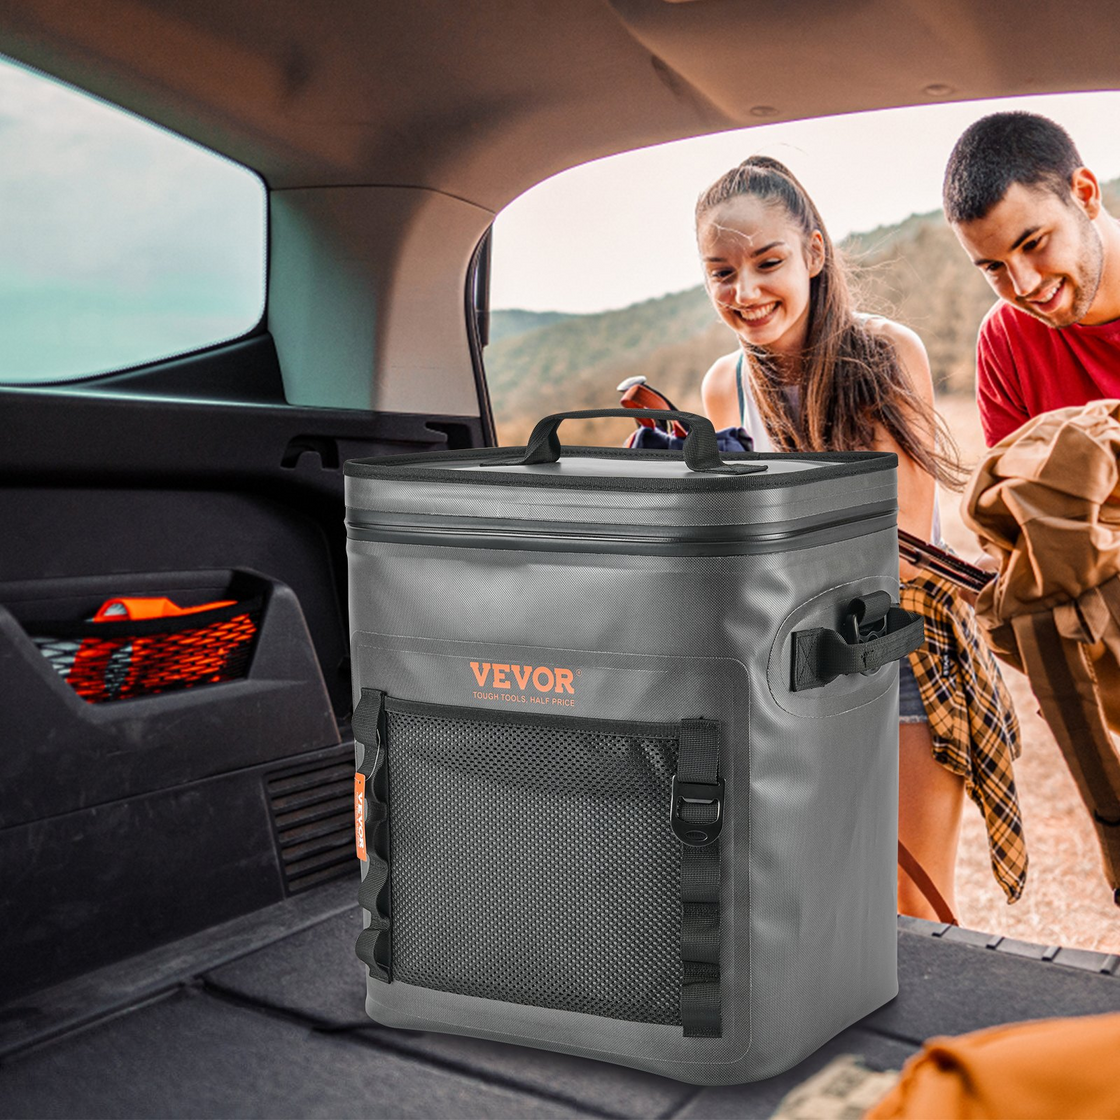 VEVOR Soft Cooler Bag - Leakproof, Waterproof, and Portable